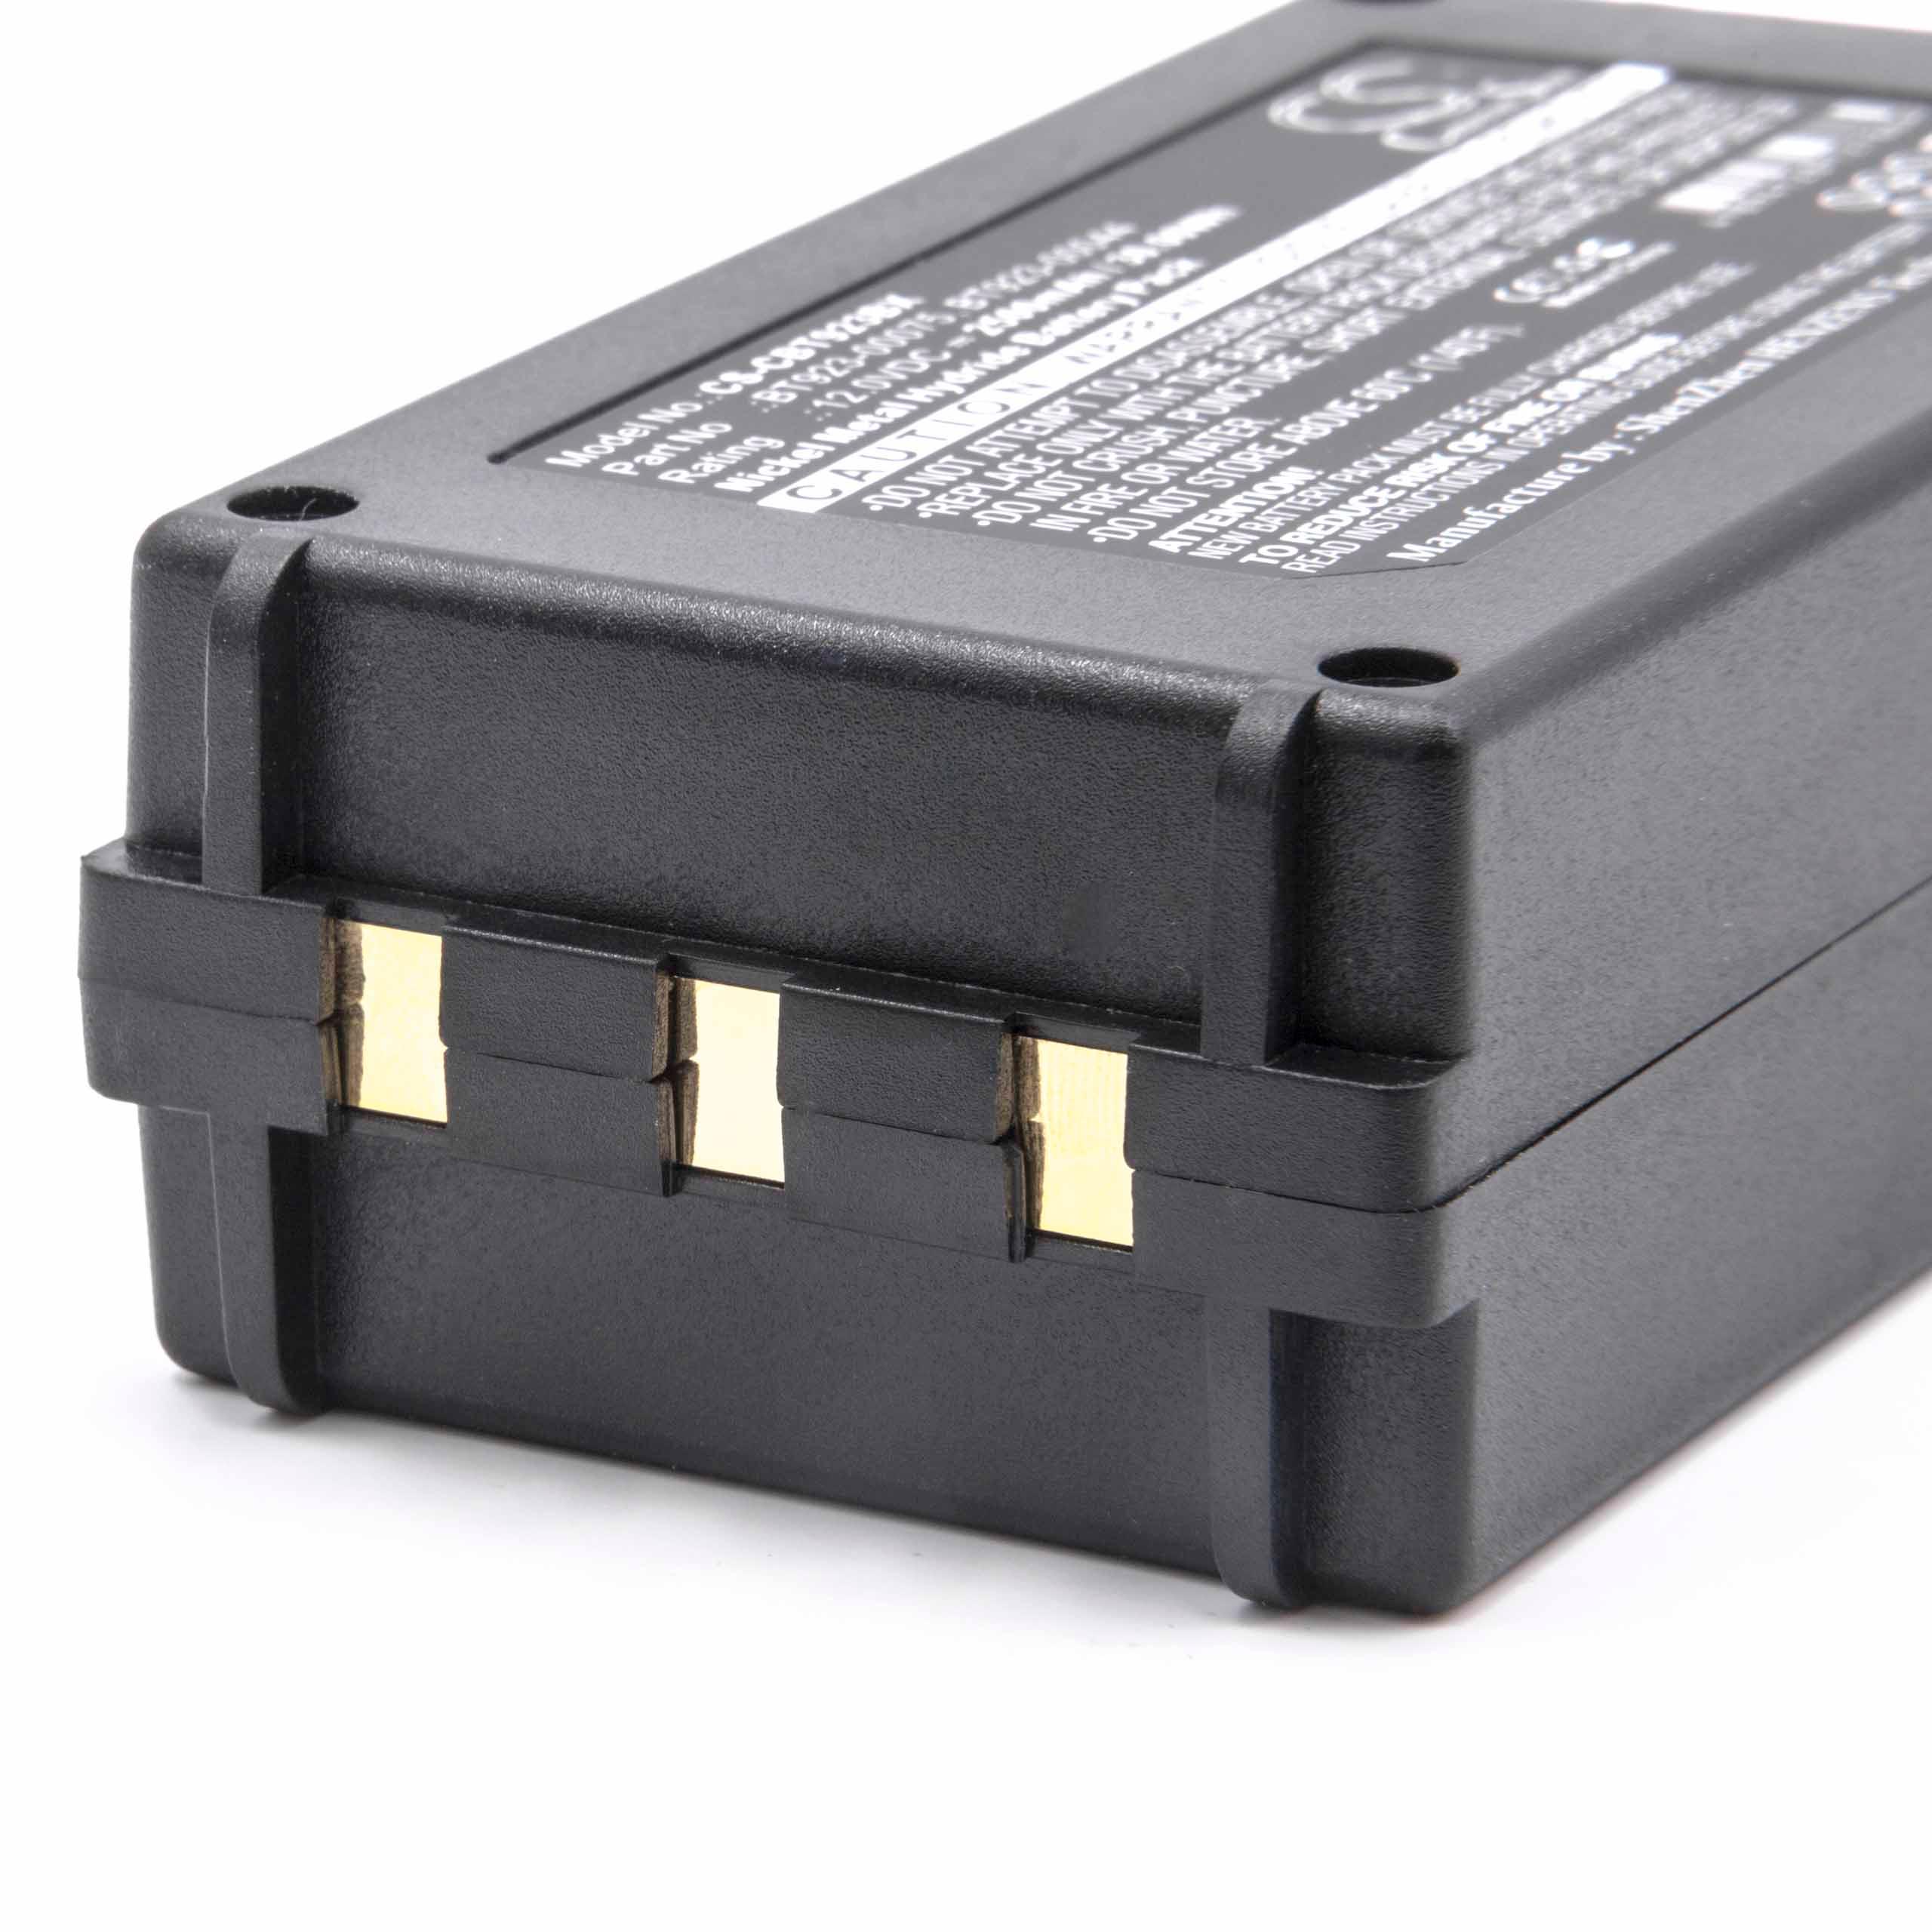 Batterie remplace Cattron-Theimeg BT081-00053 pour télécomande industrielle - 2500mAh 12V NiMH